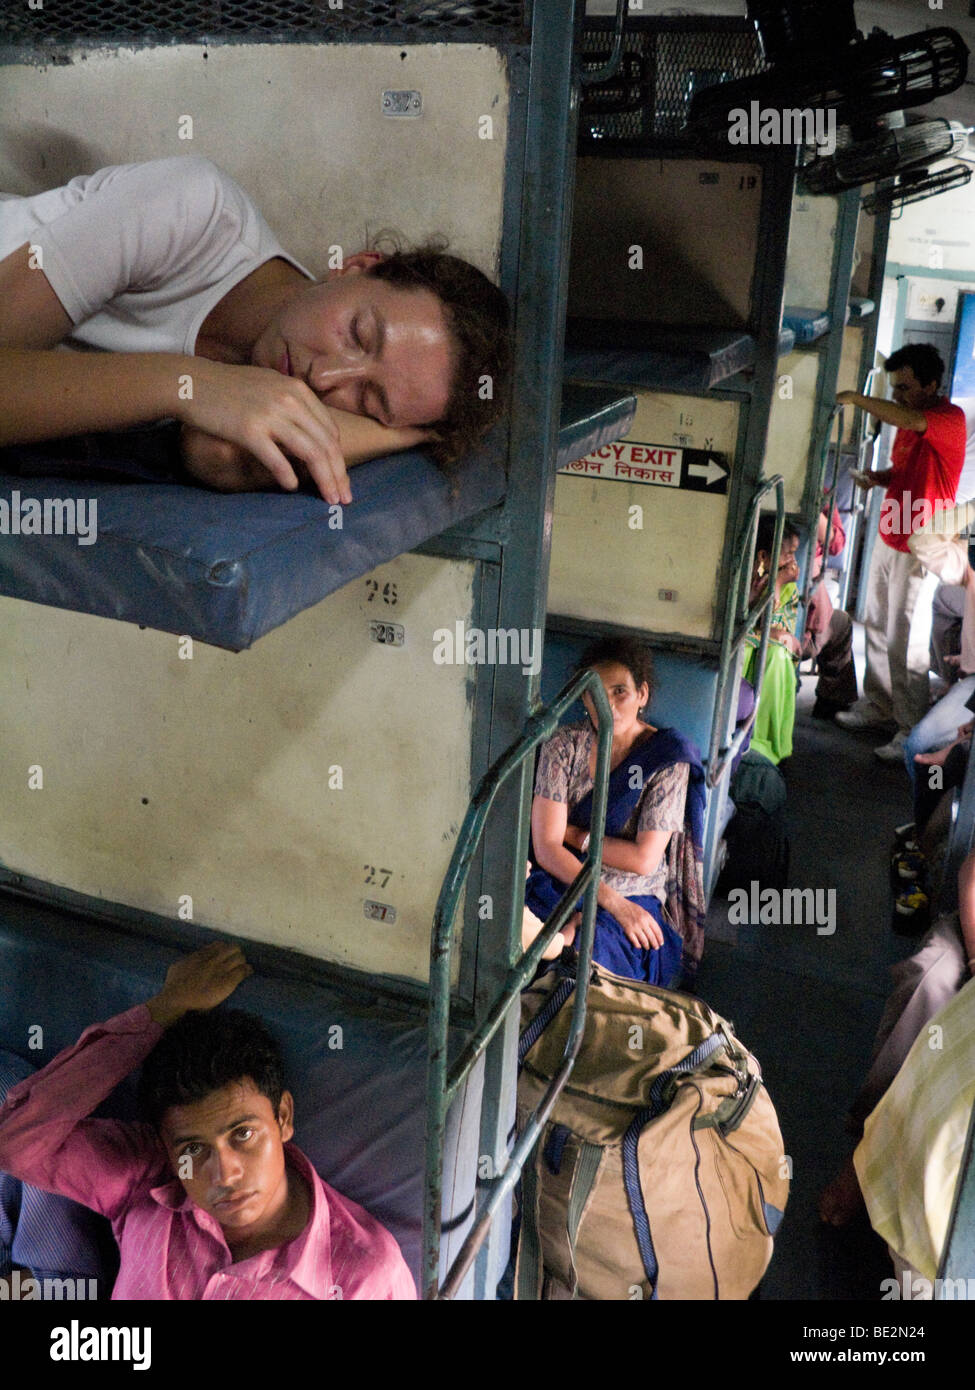 Pasajeros de Europa occidental descansa sobre una cama litera, sobre pasajeros indios sentados en un compartimiento del durmiente. Tren indio. Foto de stock